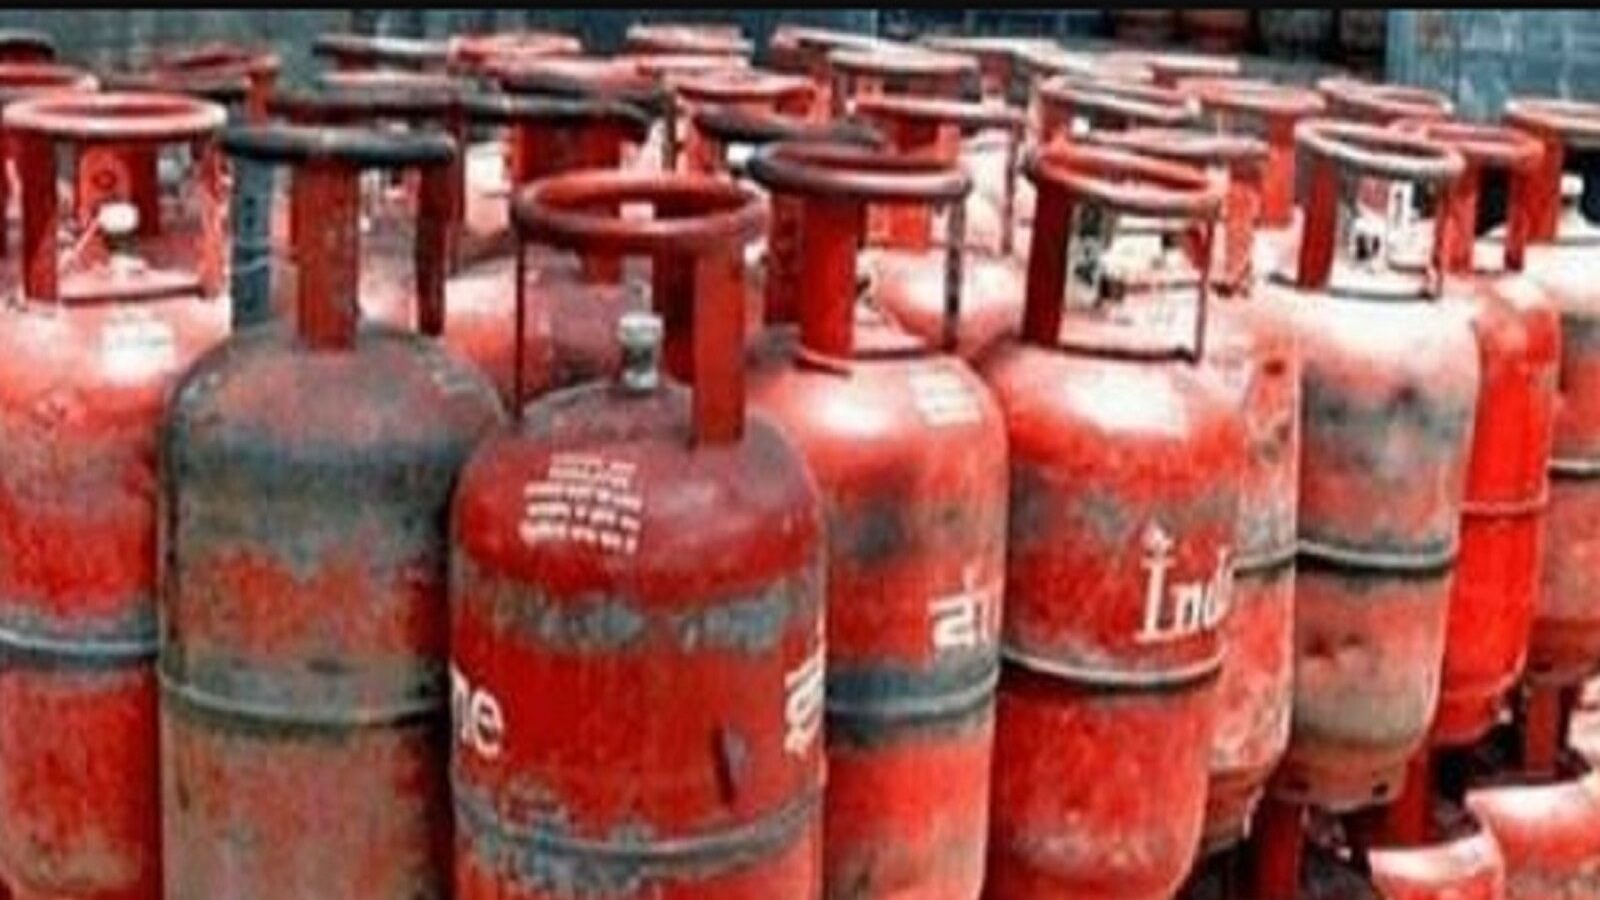 LPG consumers ready to pay Rs 1000 per cylinder govt no clarity on subsidy  varpat - LPG cylinder- रसोई गैस सब्सिडी को लेकर सरकार का नया प्लान, जानिए  अब किसके खाते में